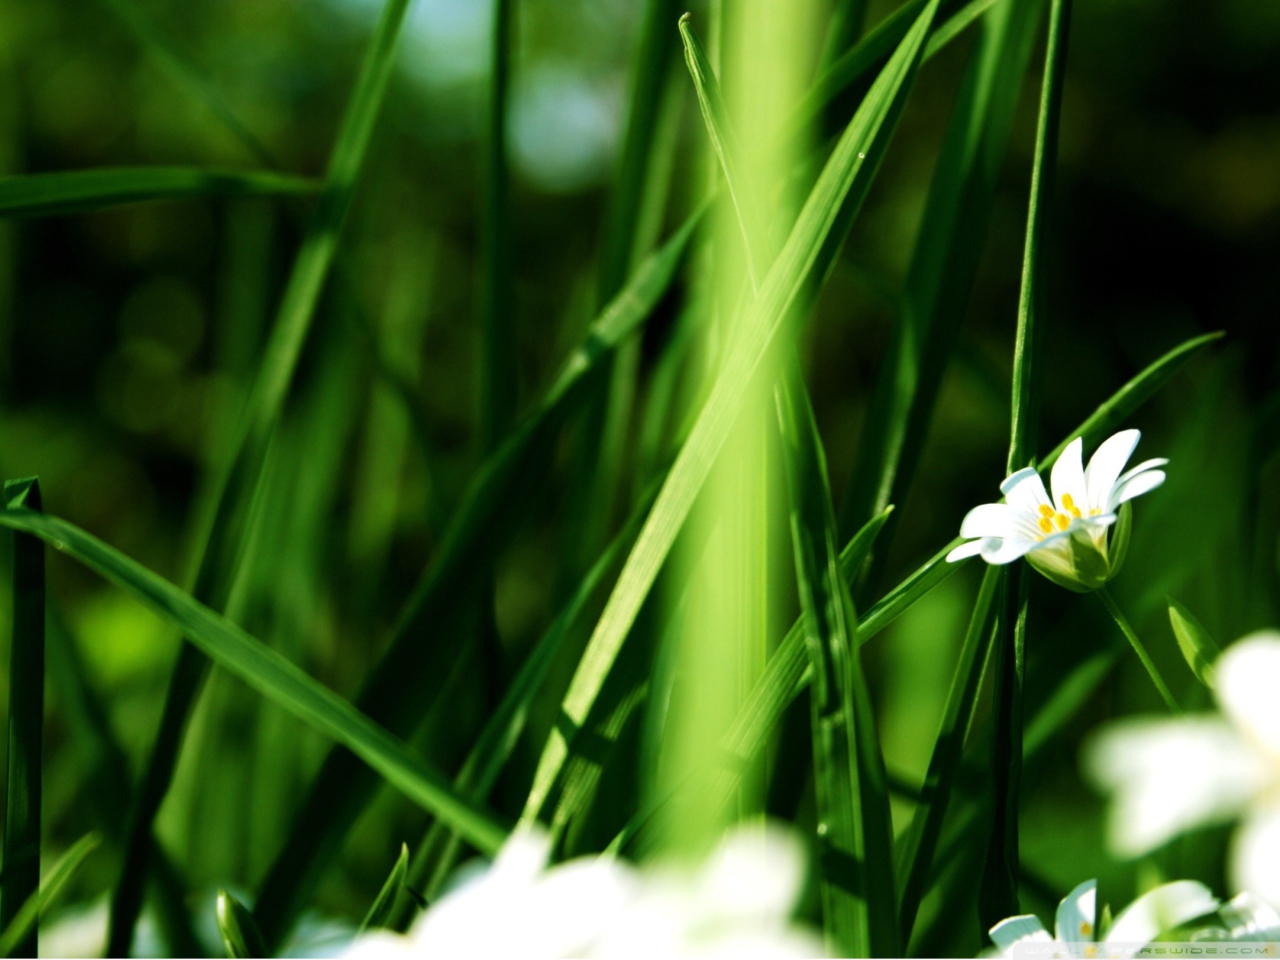 Обои Grass And White Flowers 1280x960